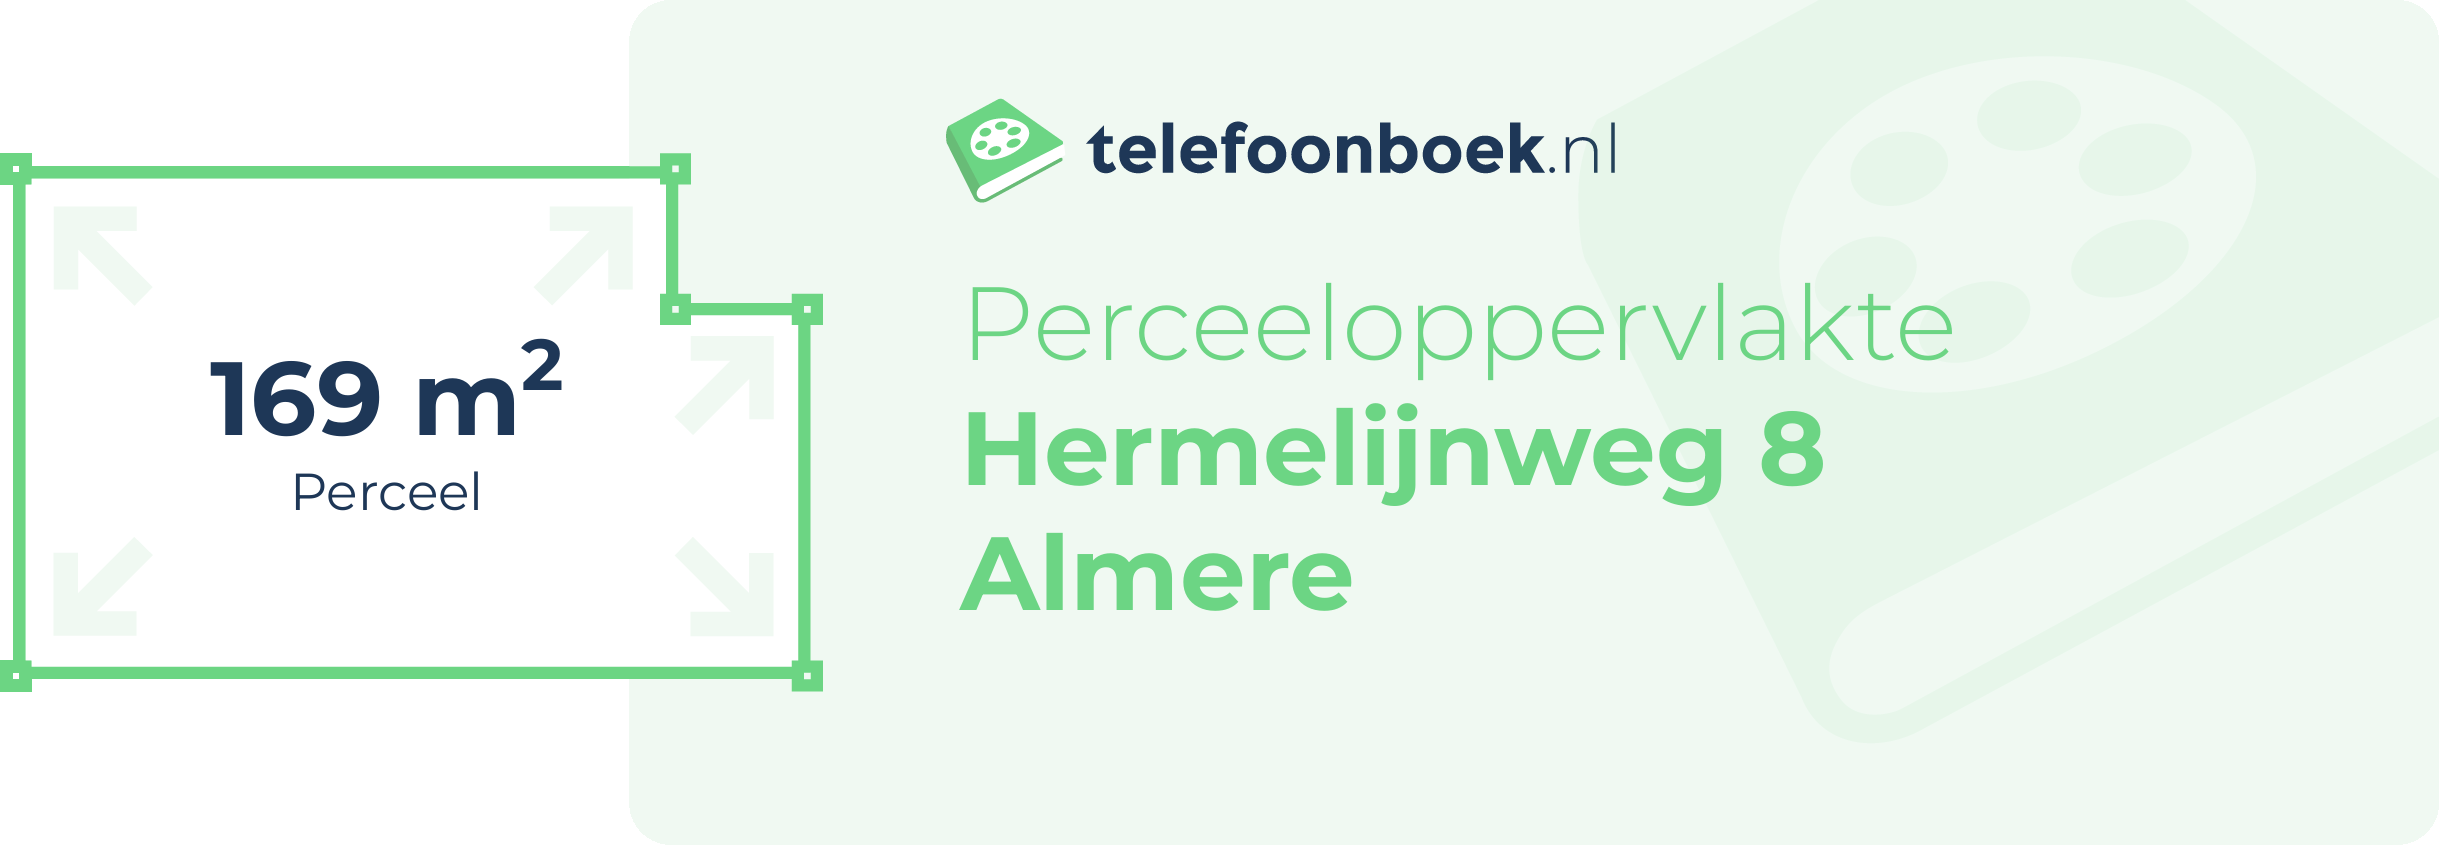 Perceeloppervlakte Hermelijnweg 8 Almere